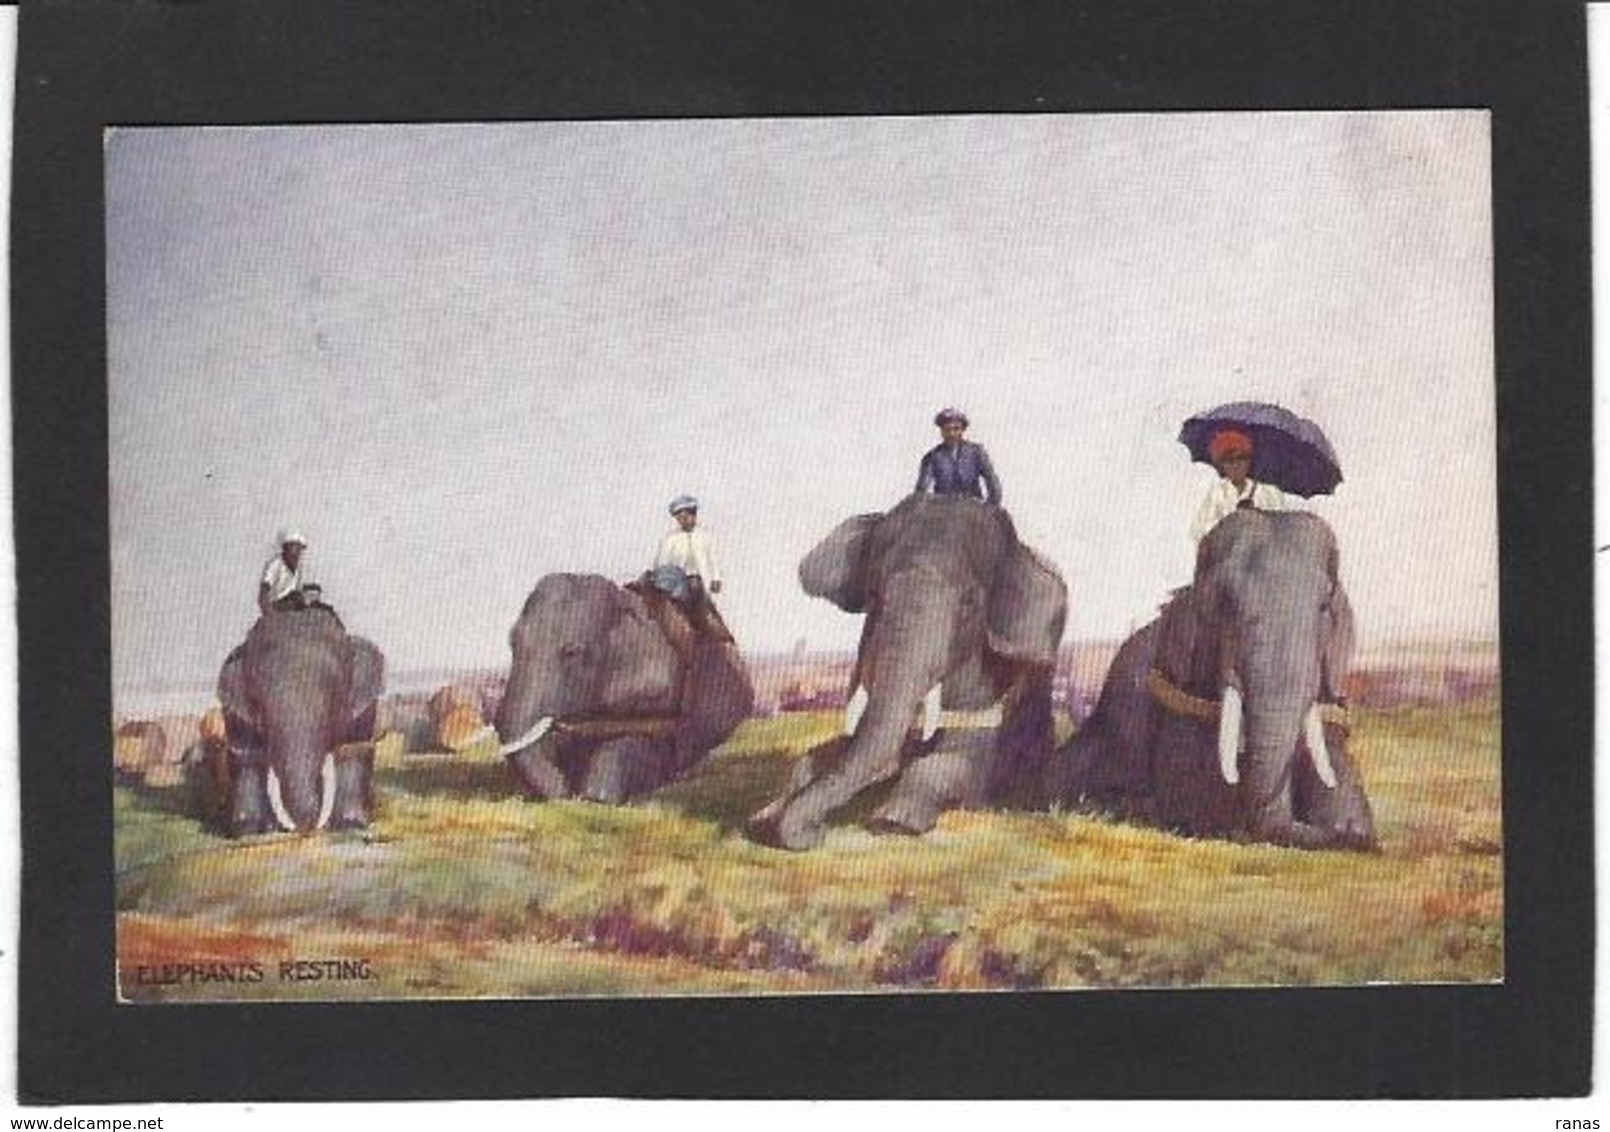 CPA éléphant écrite éditeur Tuck's Oilette - Elephants